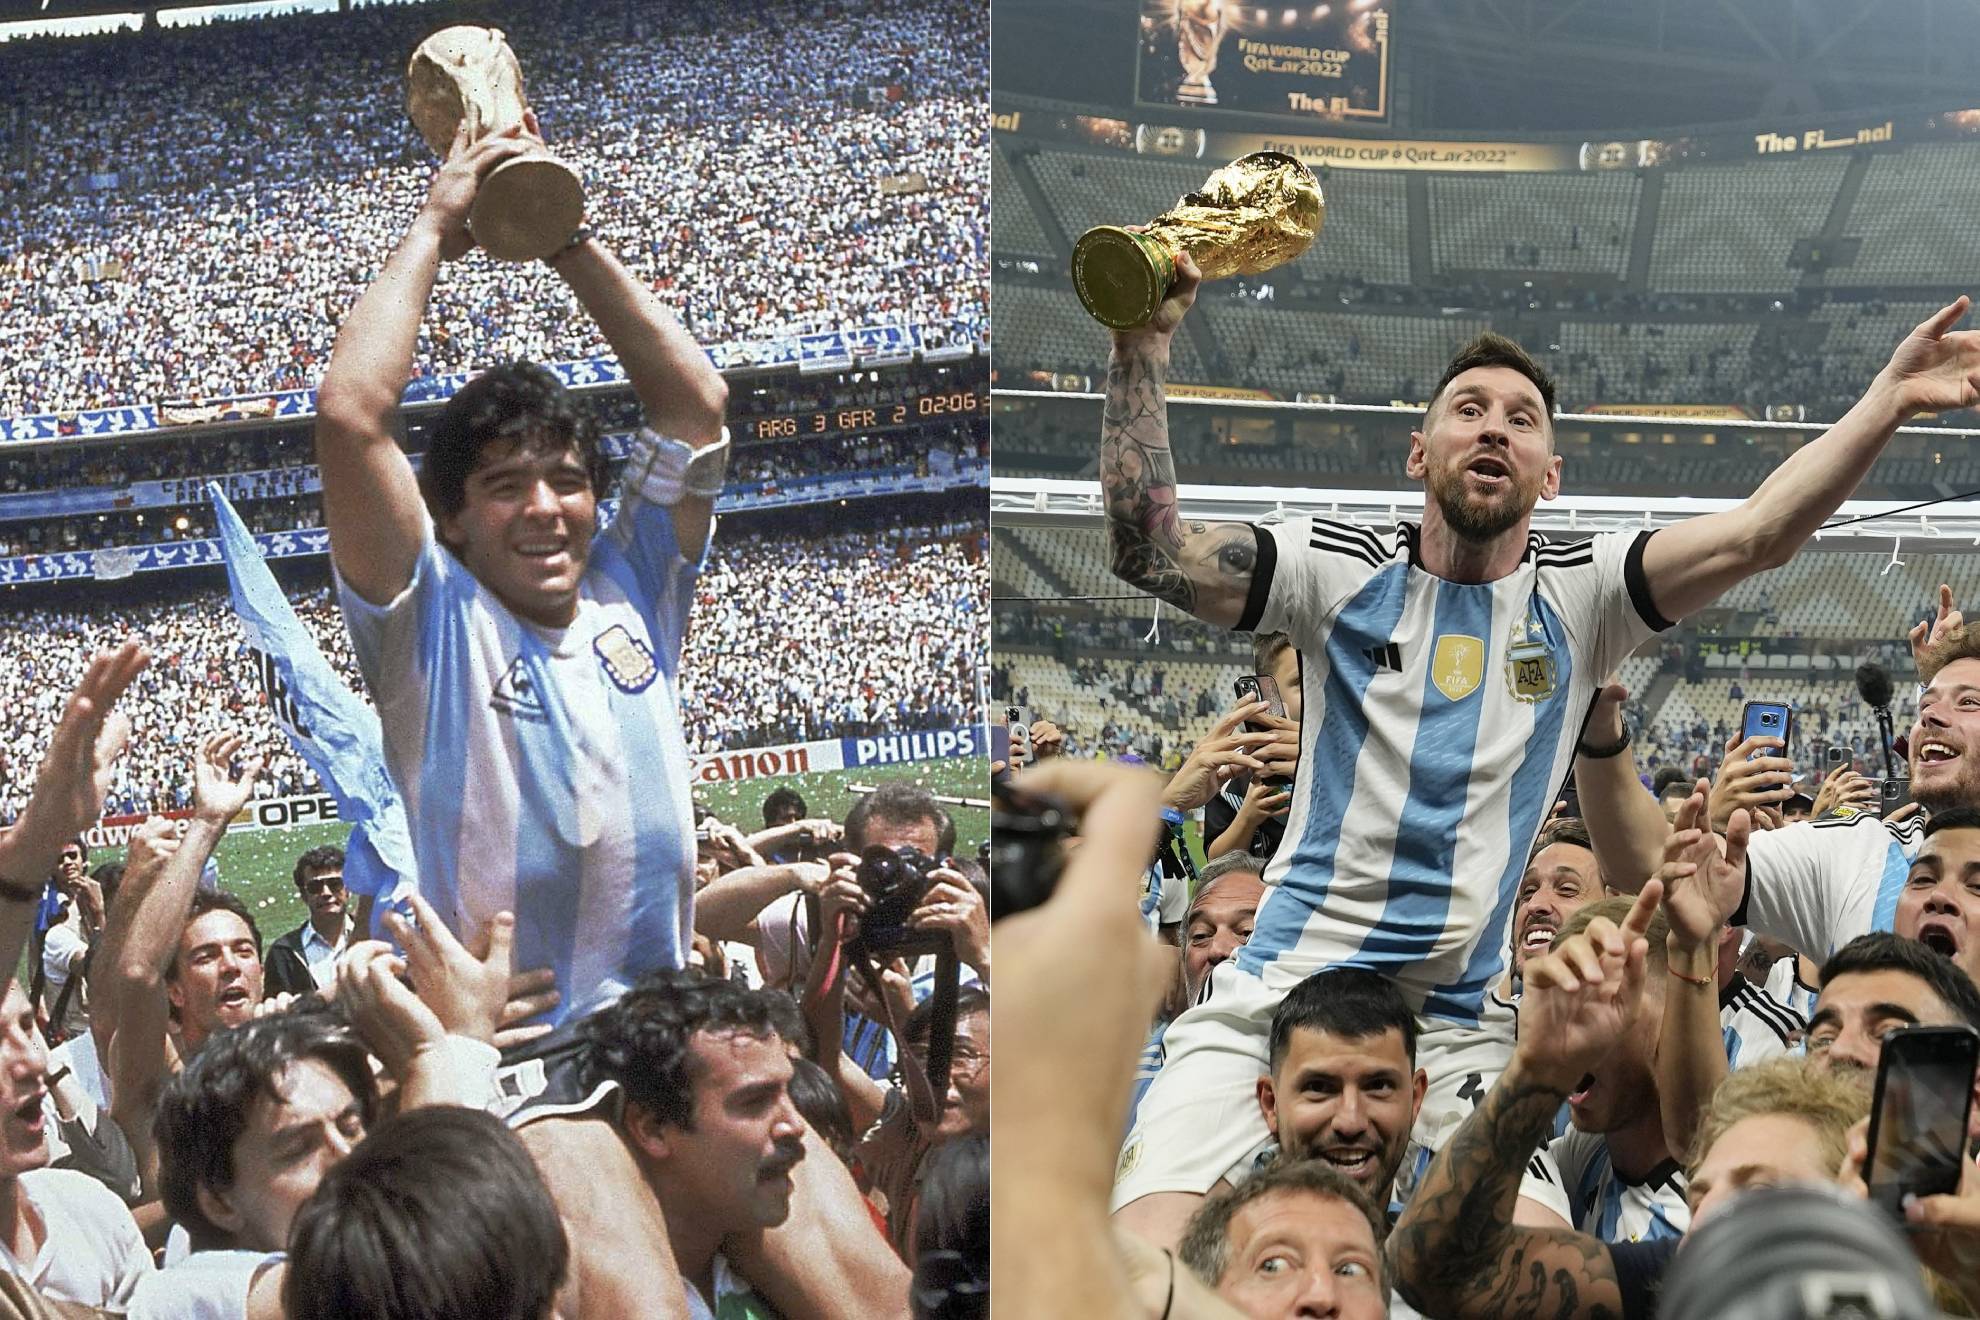 Chào mừng bạn đến với hình ảnh liên quan đến Messi và World Cup 2024! Đây là một cơ hội tuyệt vời để nhìn thấy những pha bóng đẳng cấp của ngôi sao Argentina trong một giải đấu quốc tế sắp tới. Hãy cùng đón xem và ủng hộ Messi và đội tuyển của anh nhé!